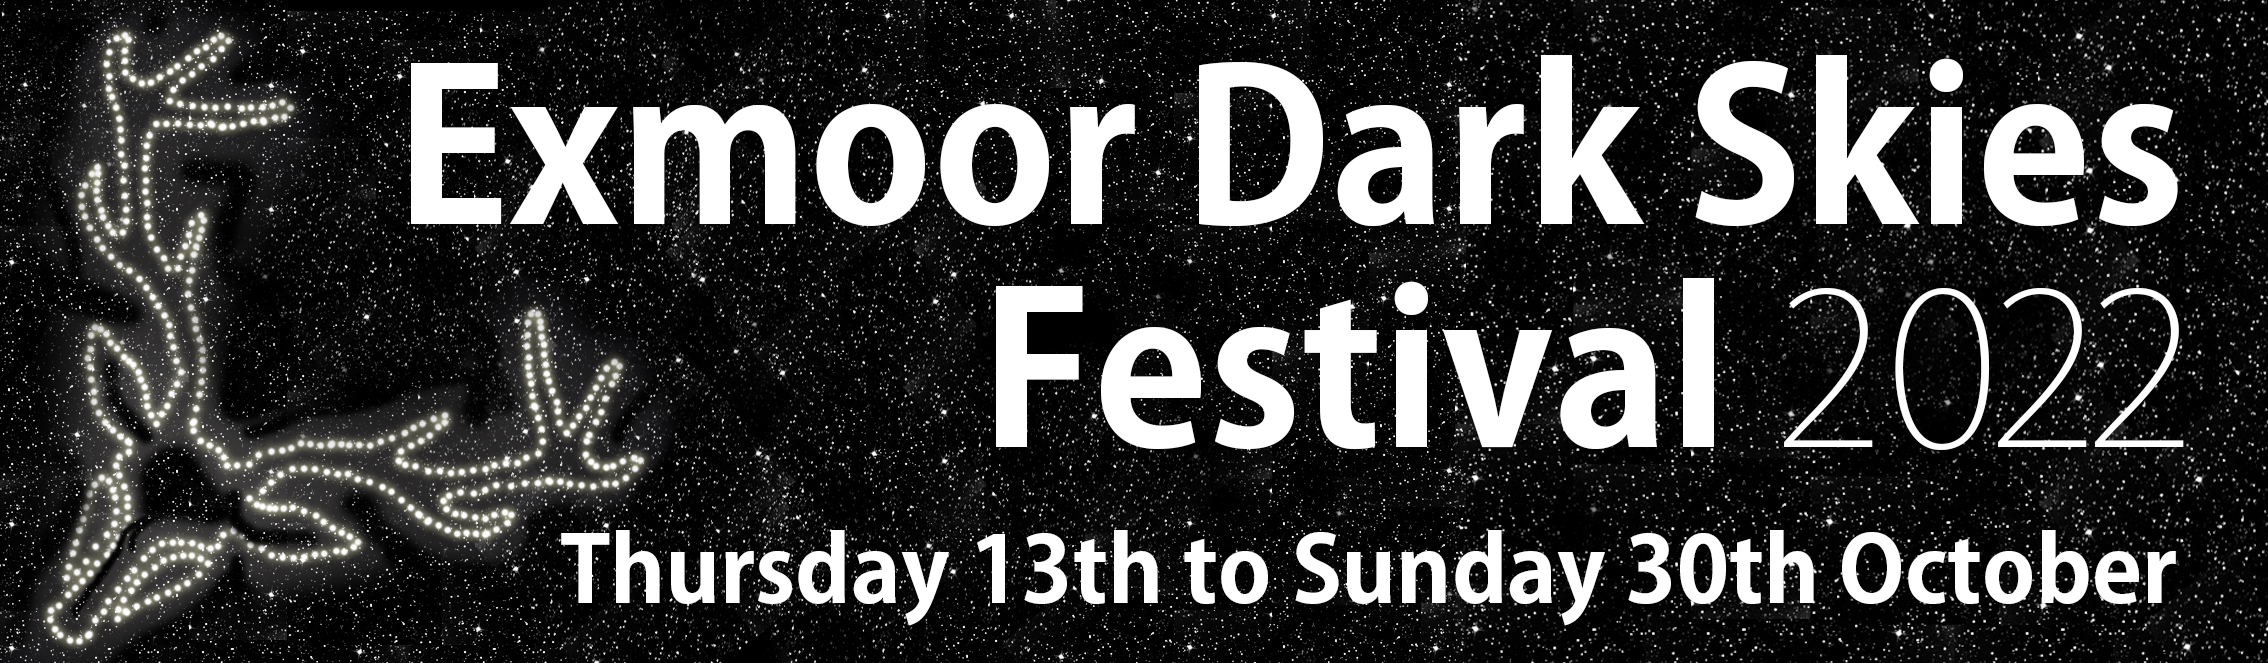 Exmoor Dark Skies Festival 2022